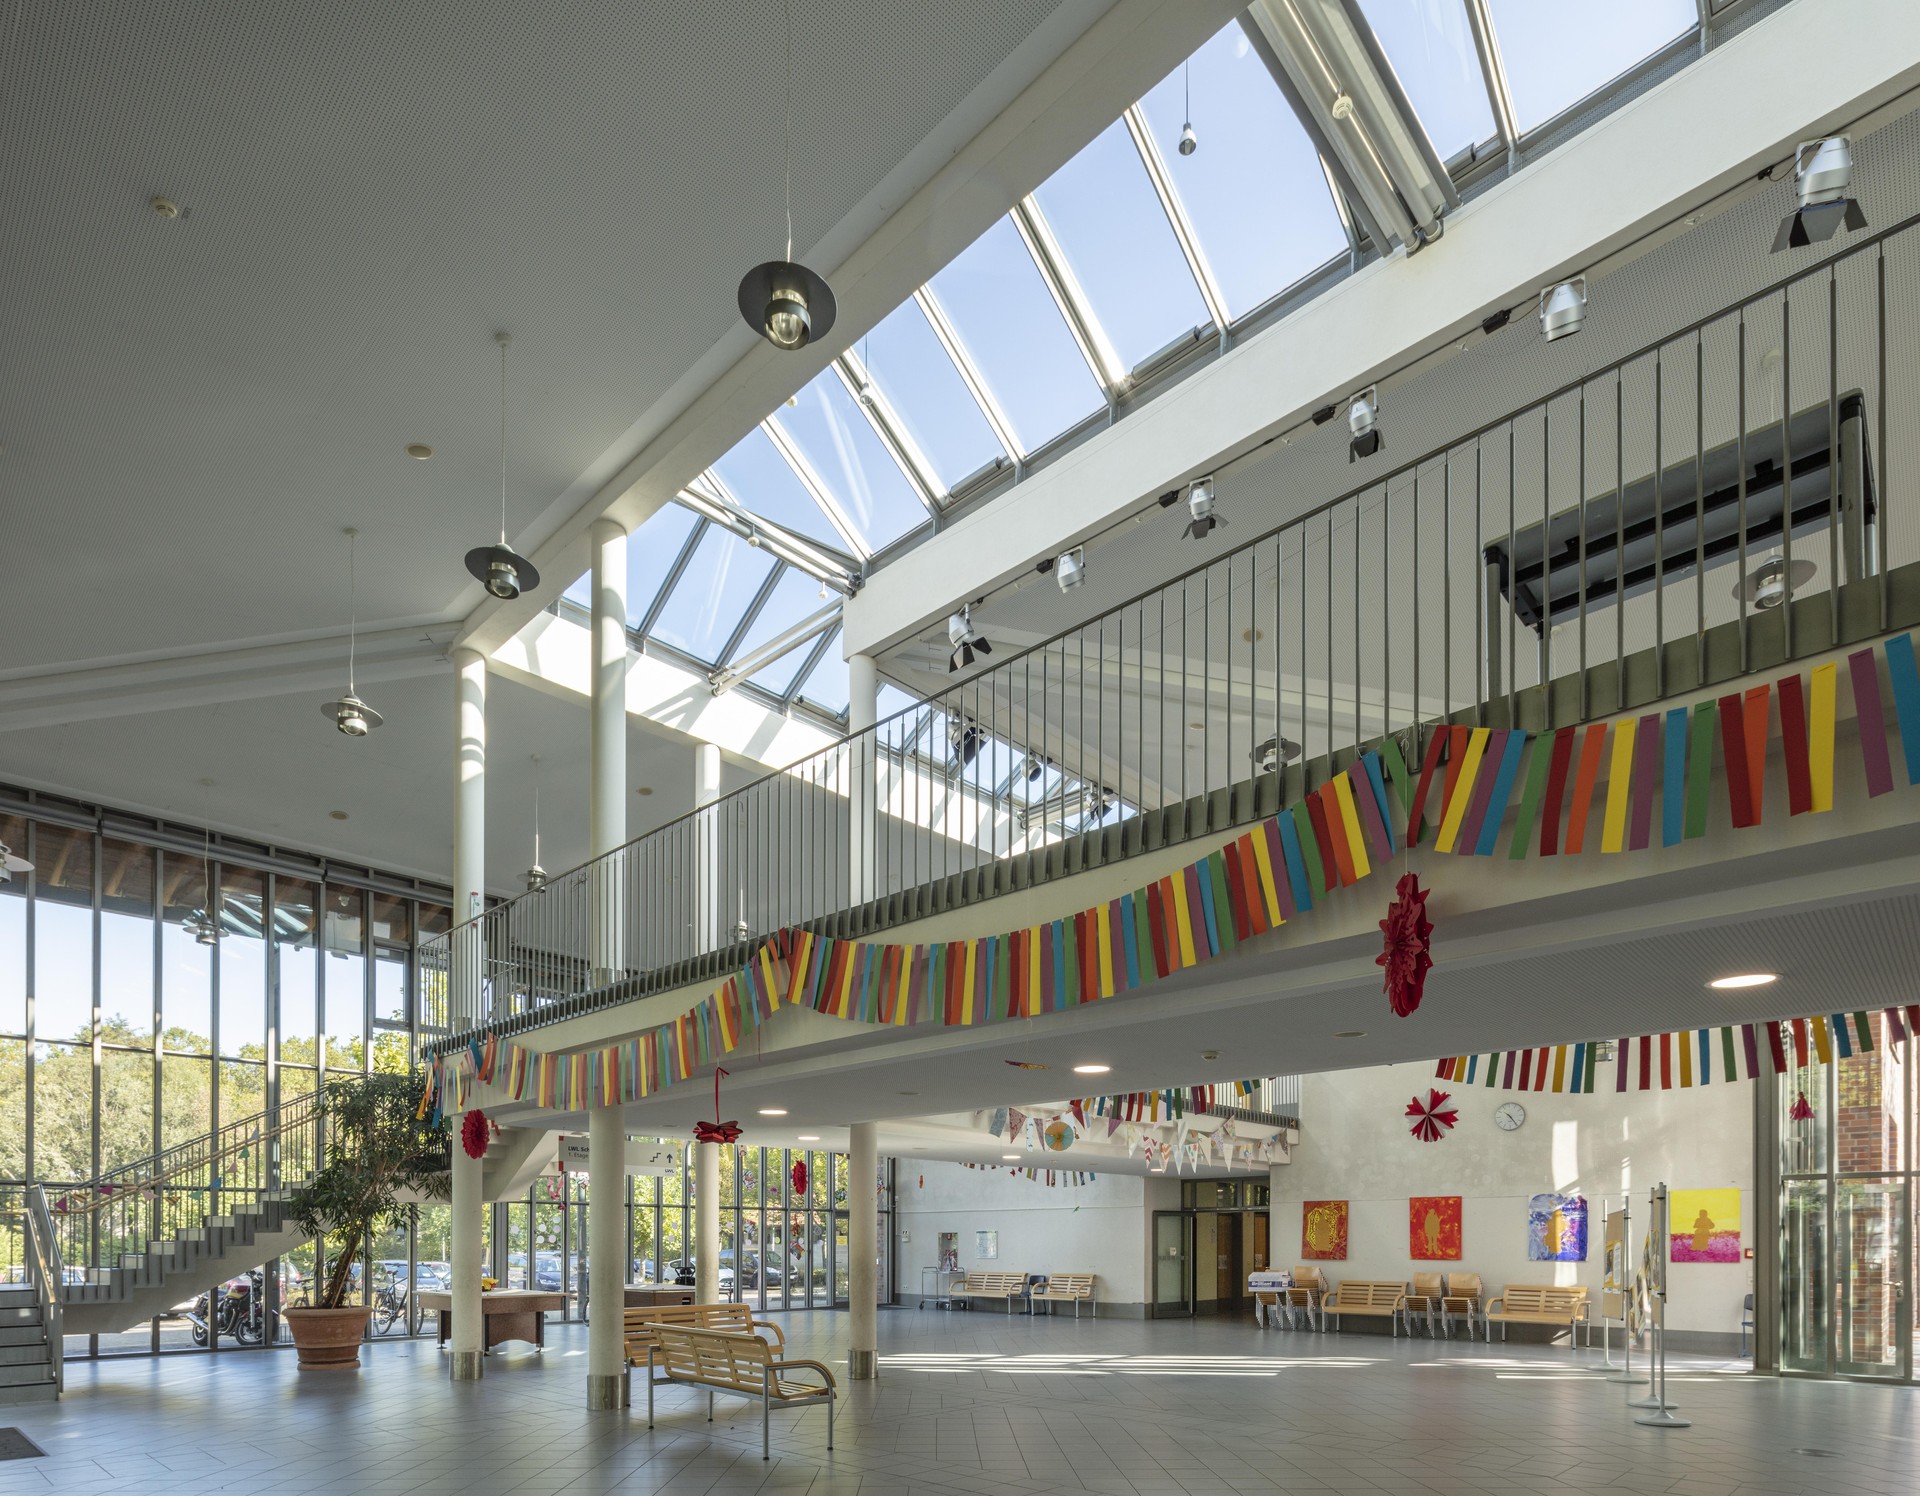 Gelsenkirchen, Löchterschule, Innenansicht der Pausenhalle mit Treppenaufgang.
Bild: PODEHL Fotodesign